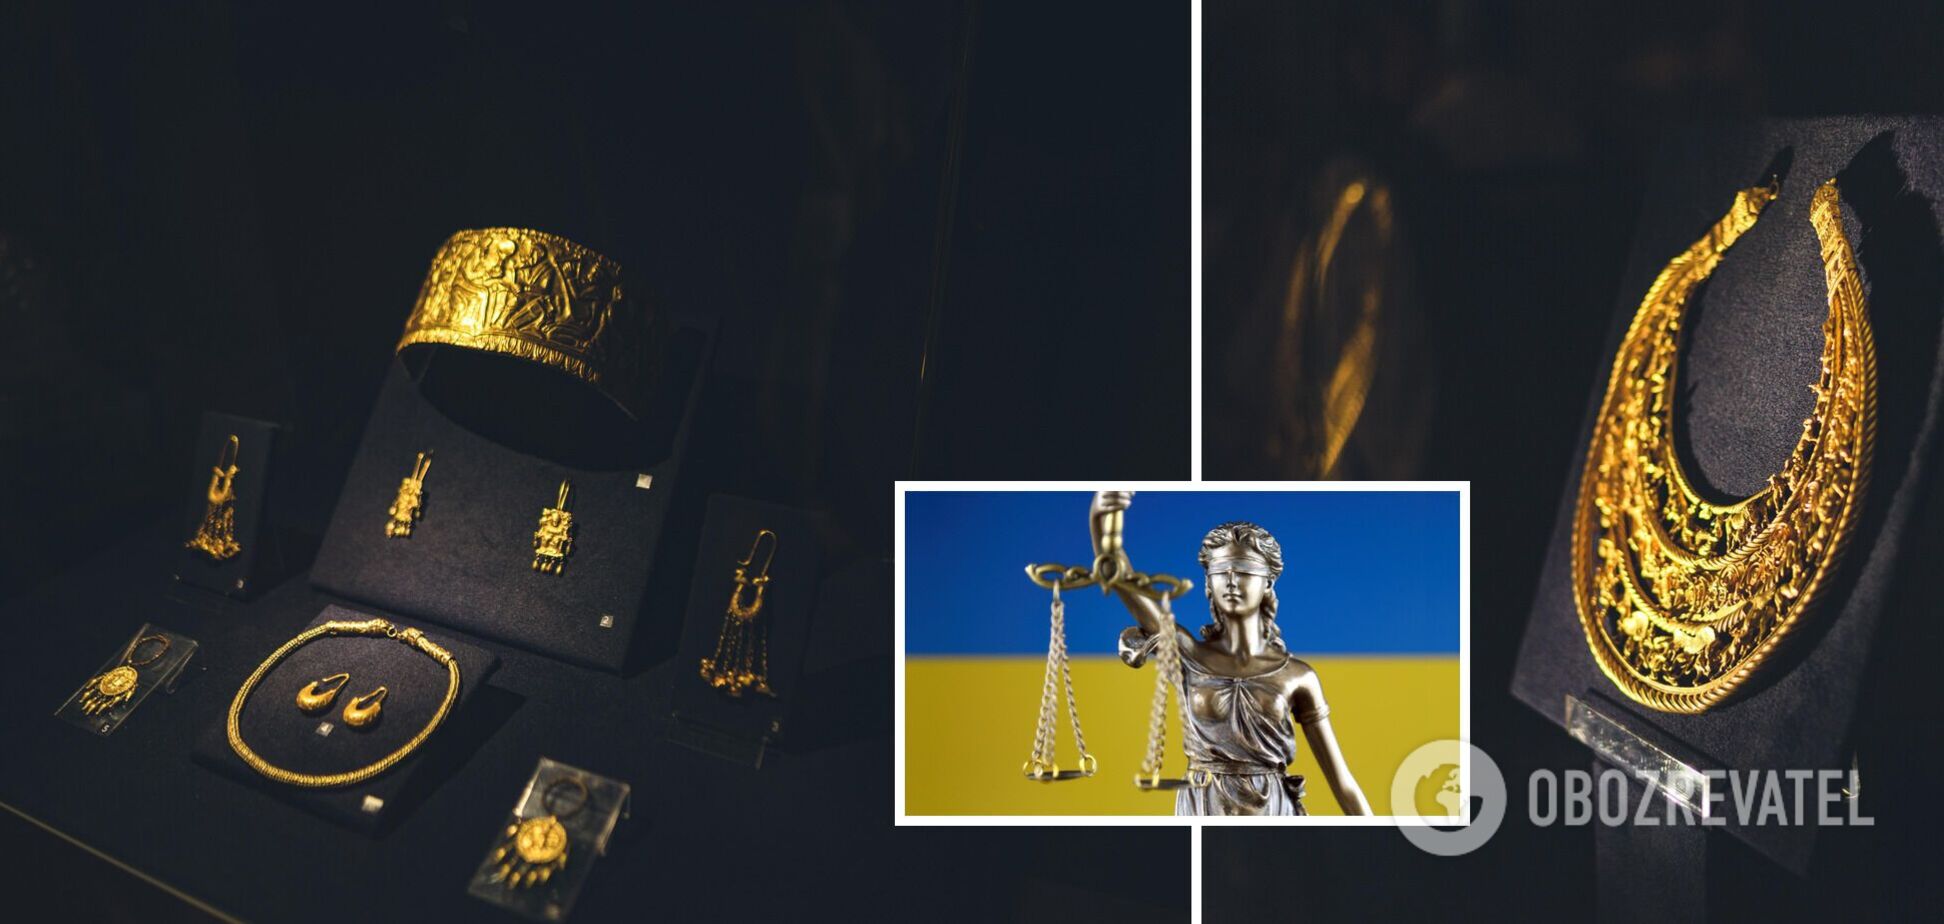 'Скіфське золото' має бути повернуто Україні: Верховний суд Нідерландів поставив крапку у справі 